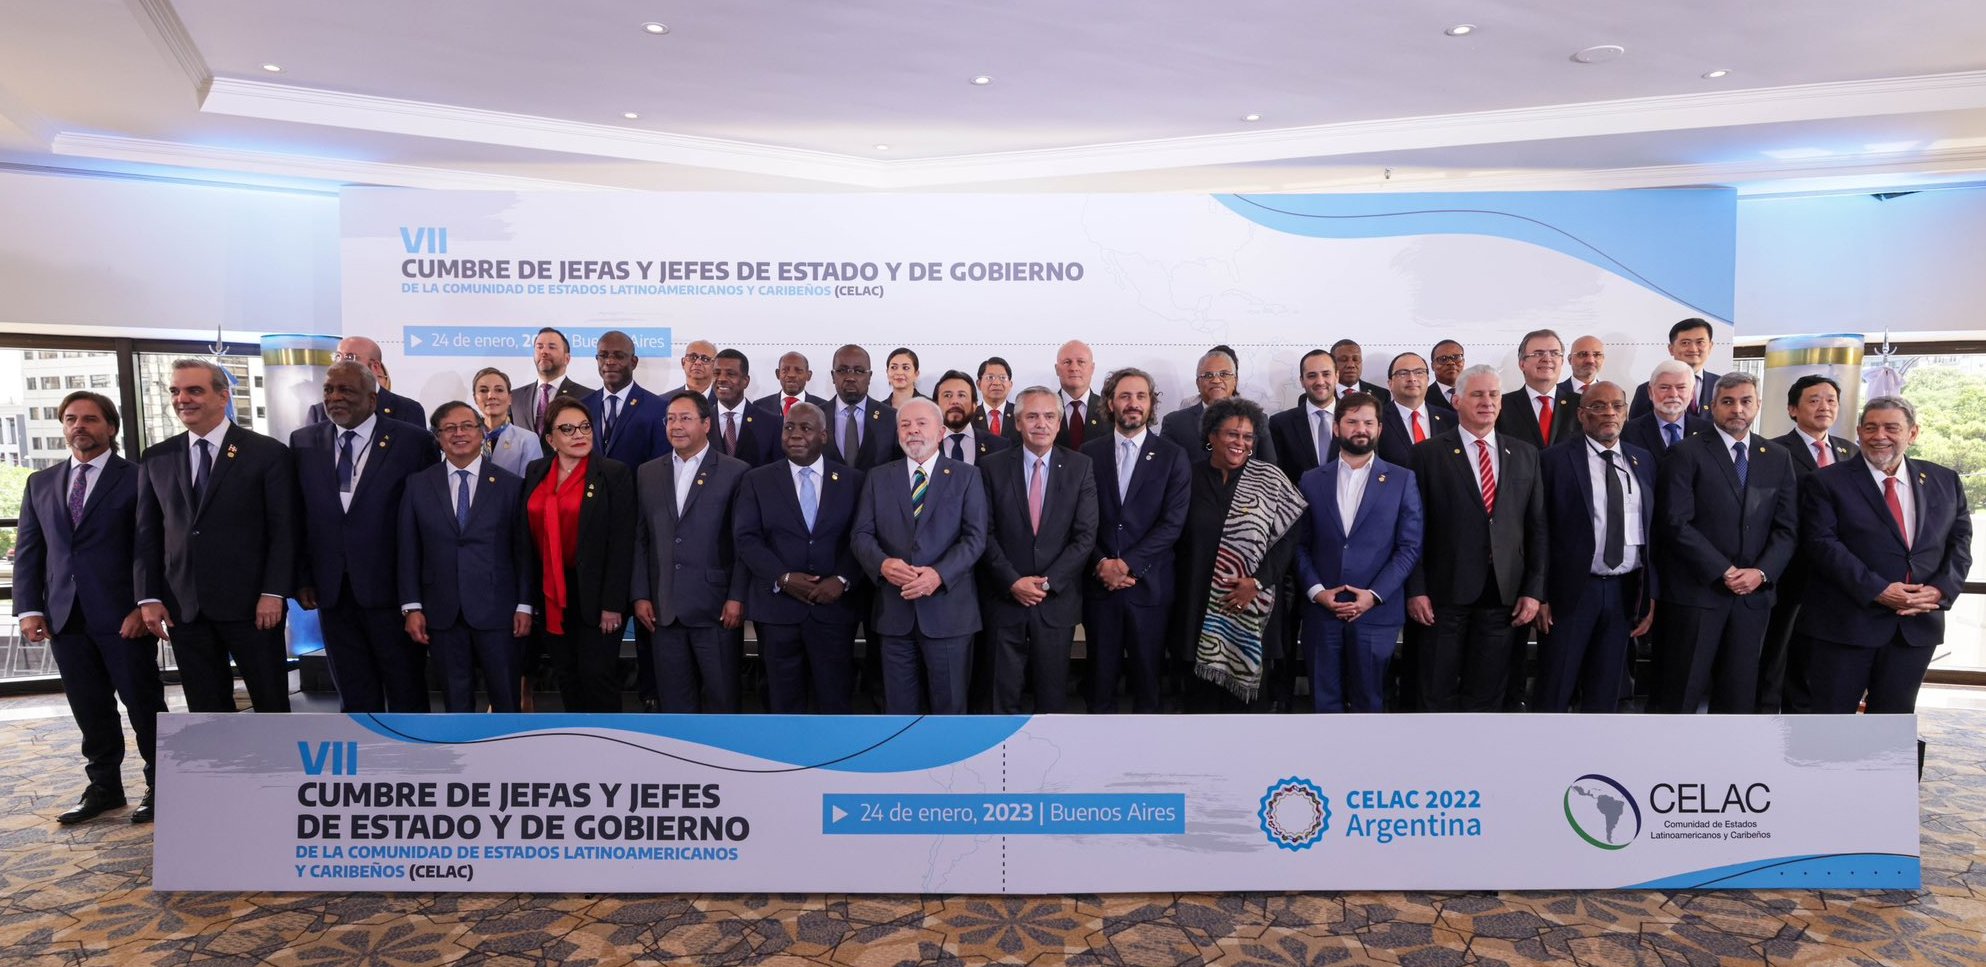 Foto oficial de los Jefes de Estado y de Gobiernos participantes en la VII Cumbre de Celac